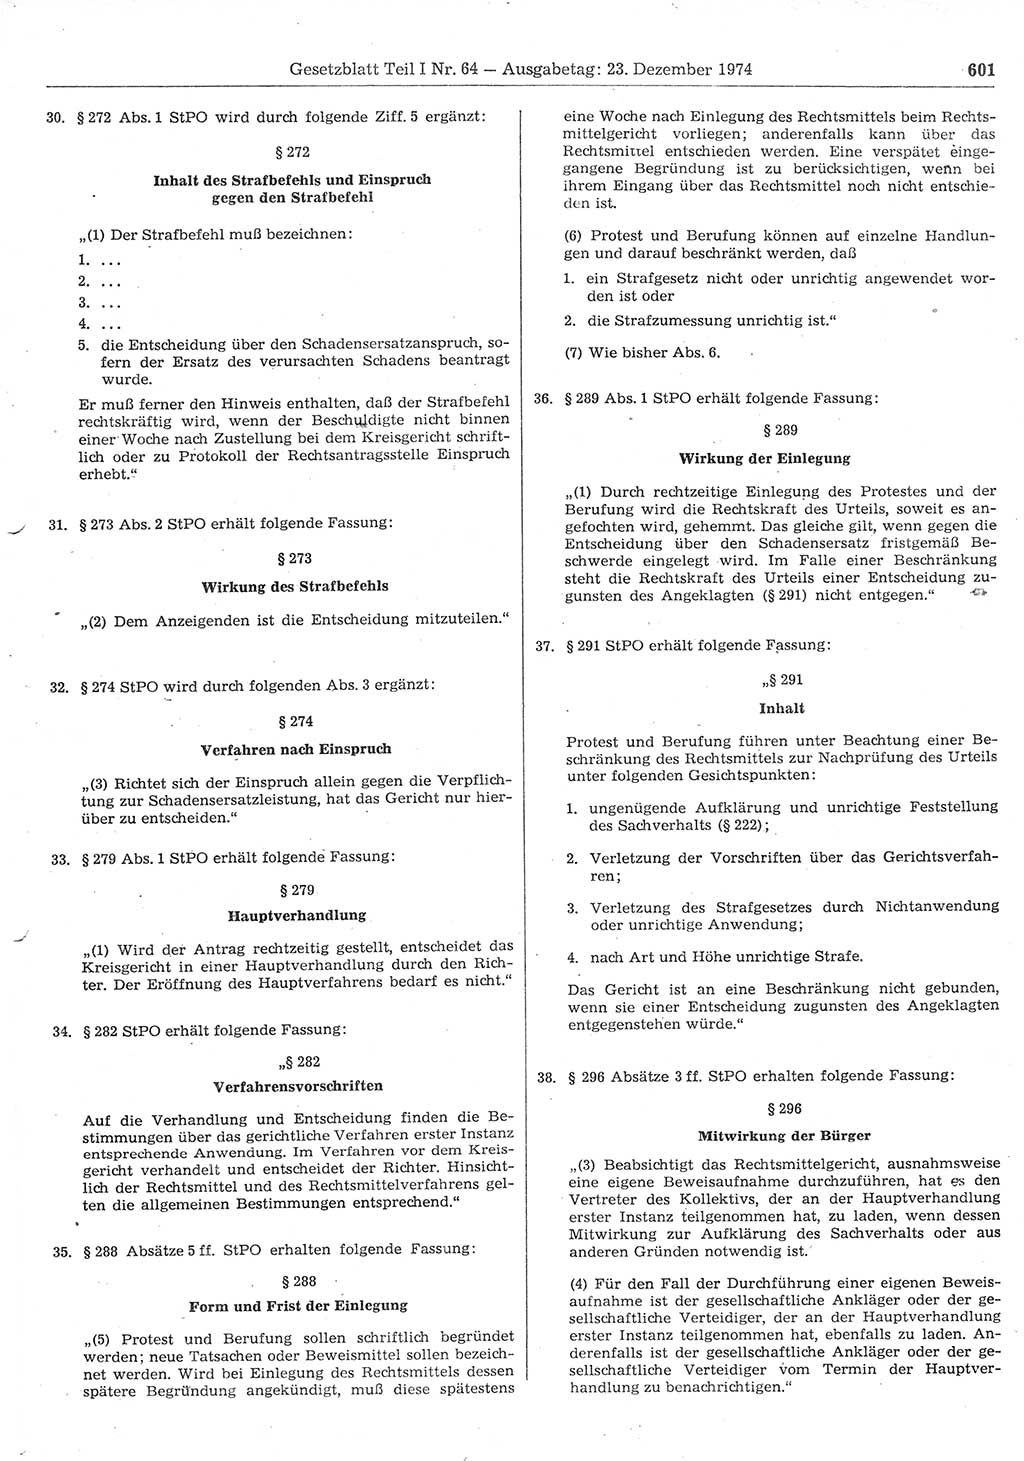 Gesetzblatt (GBl.) der Deutschen Demokratischen Republik (DDR) Teil Ⅰ 1974, Seite 601 (GBl. DDR Ⅰ 1974, S. 601)